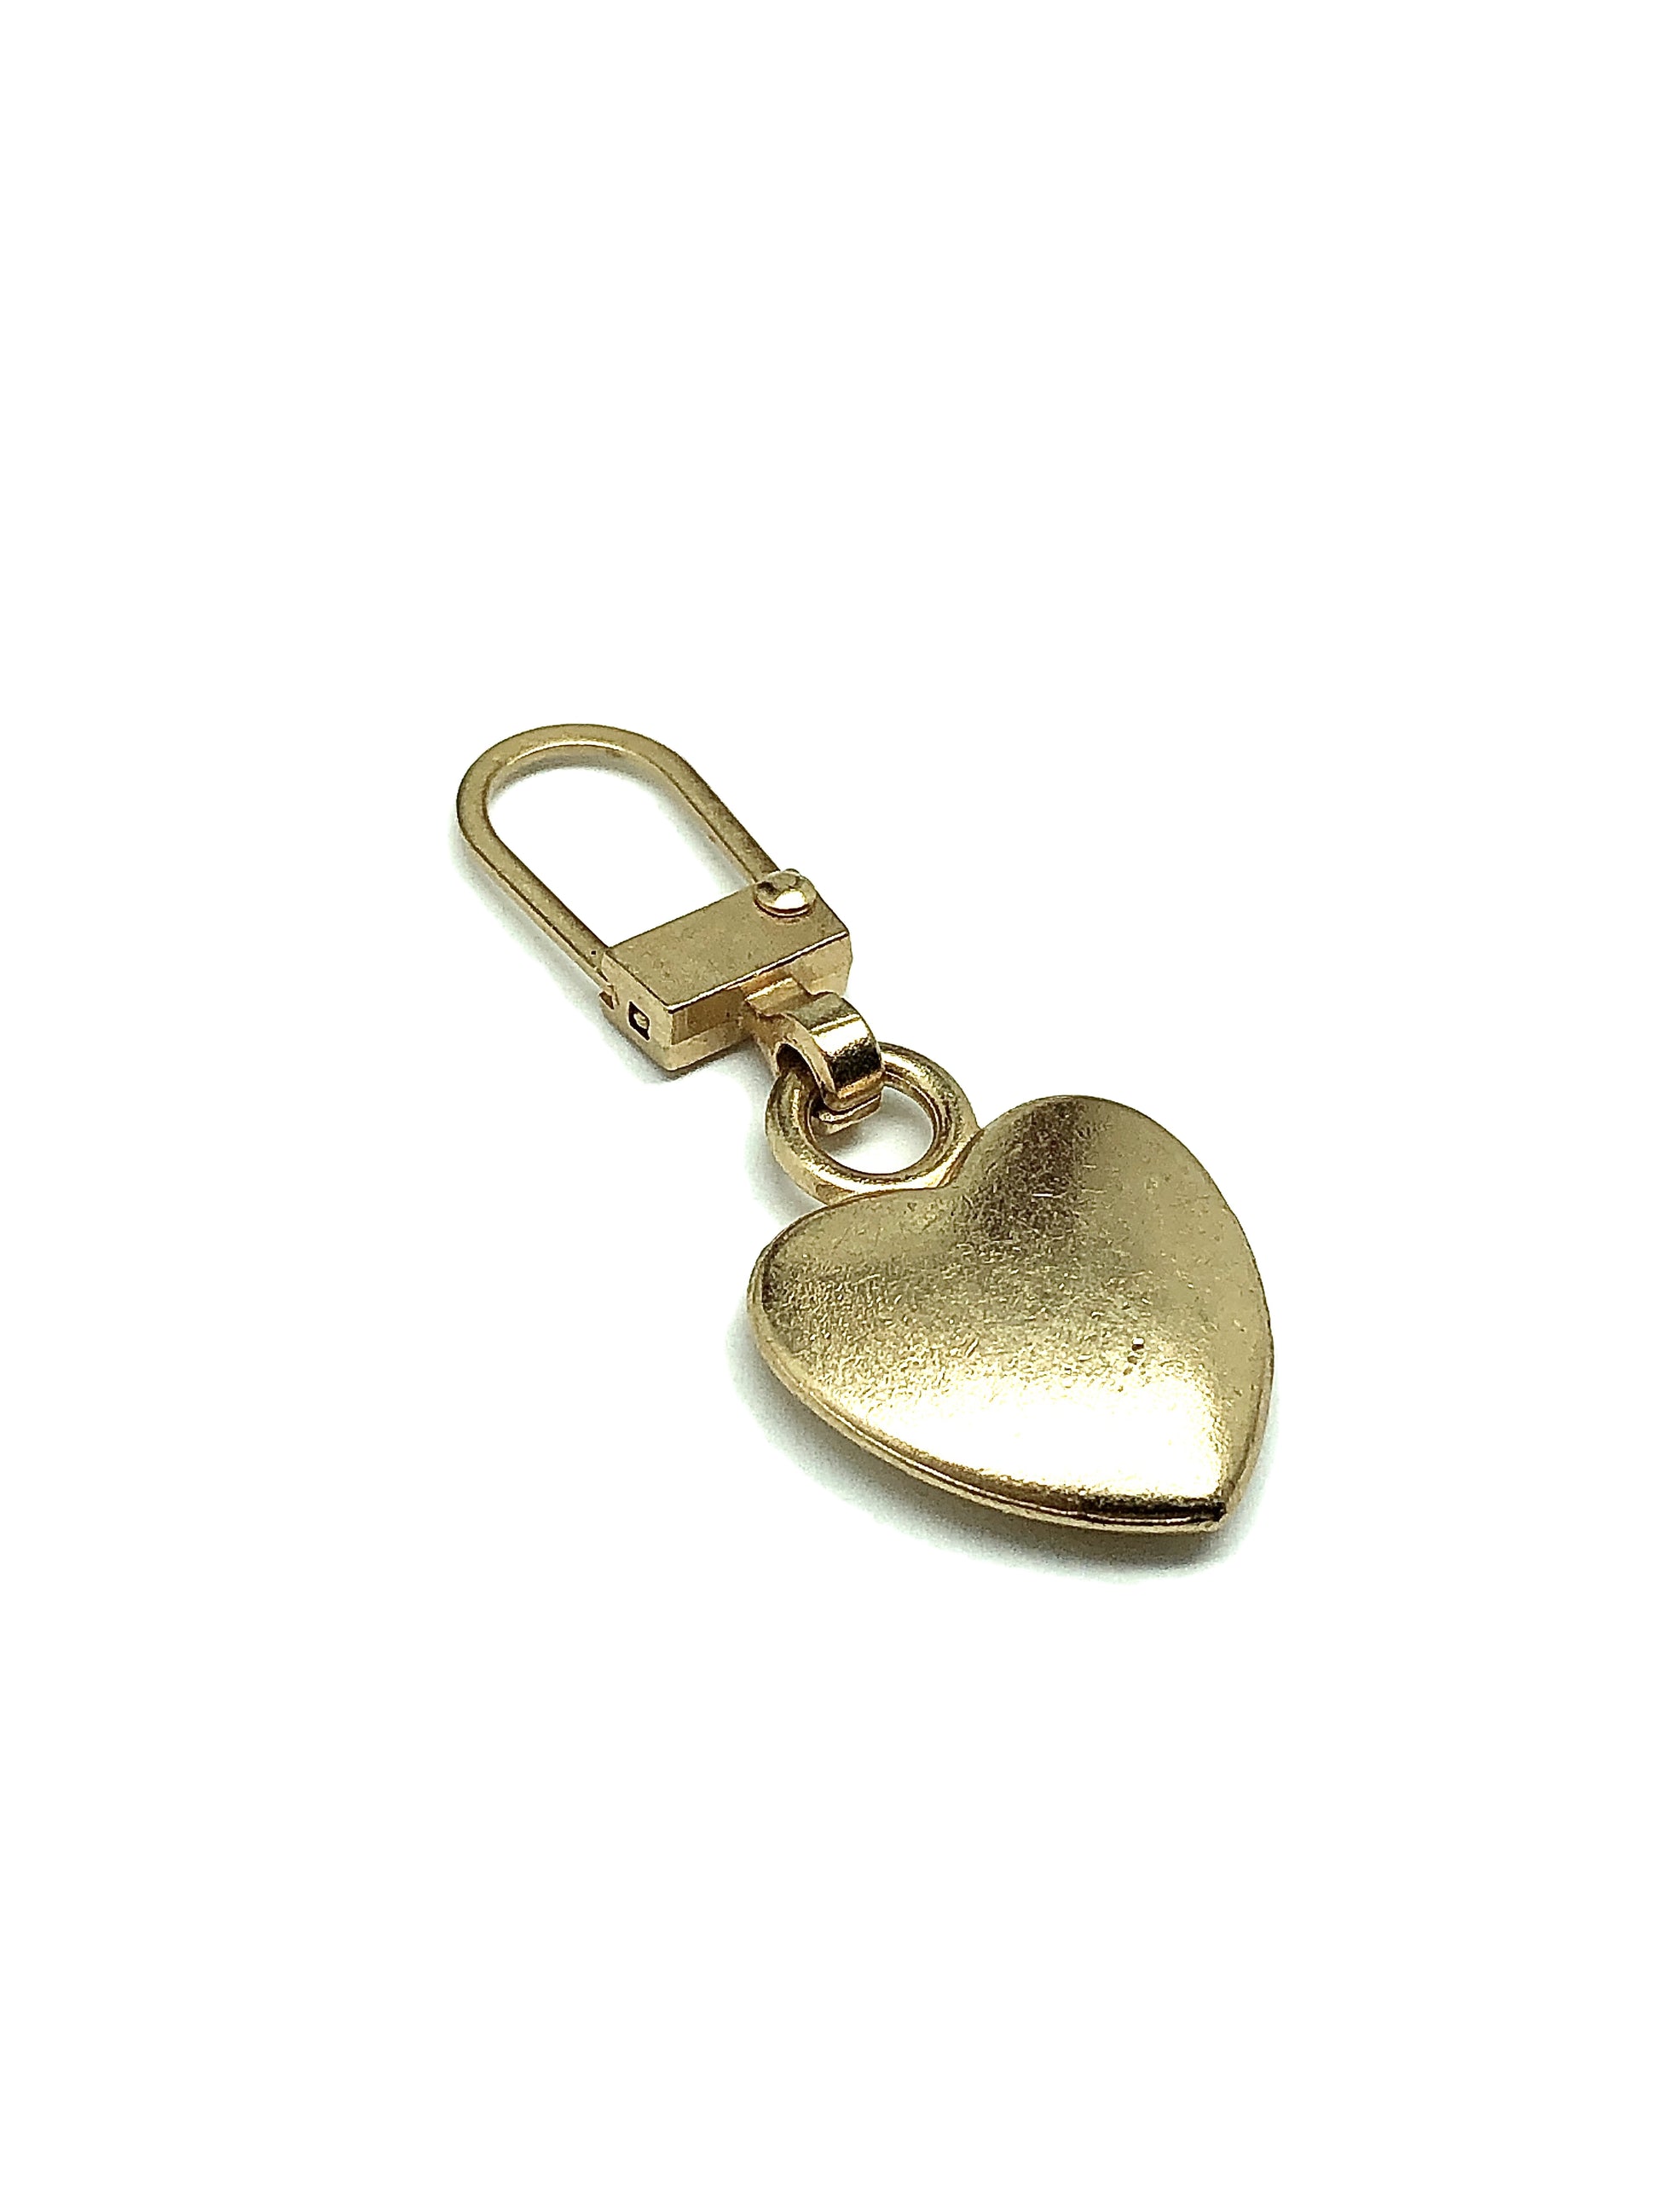 Zipper Repair Charm Heart Rustic Rose Gold - for Repair or